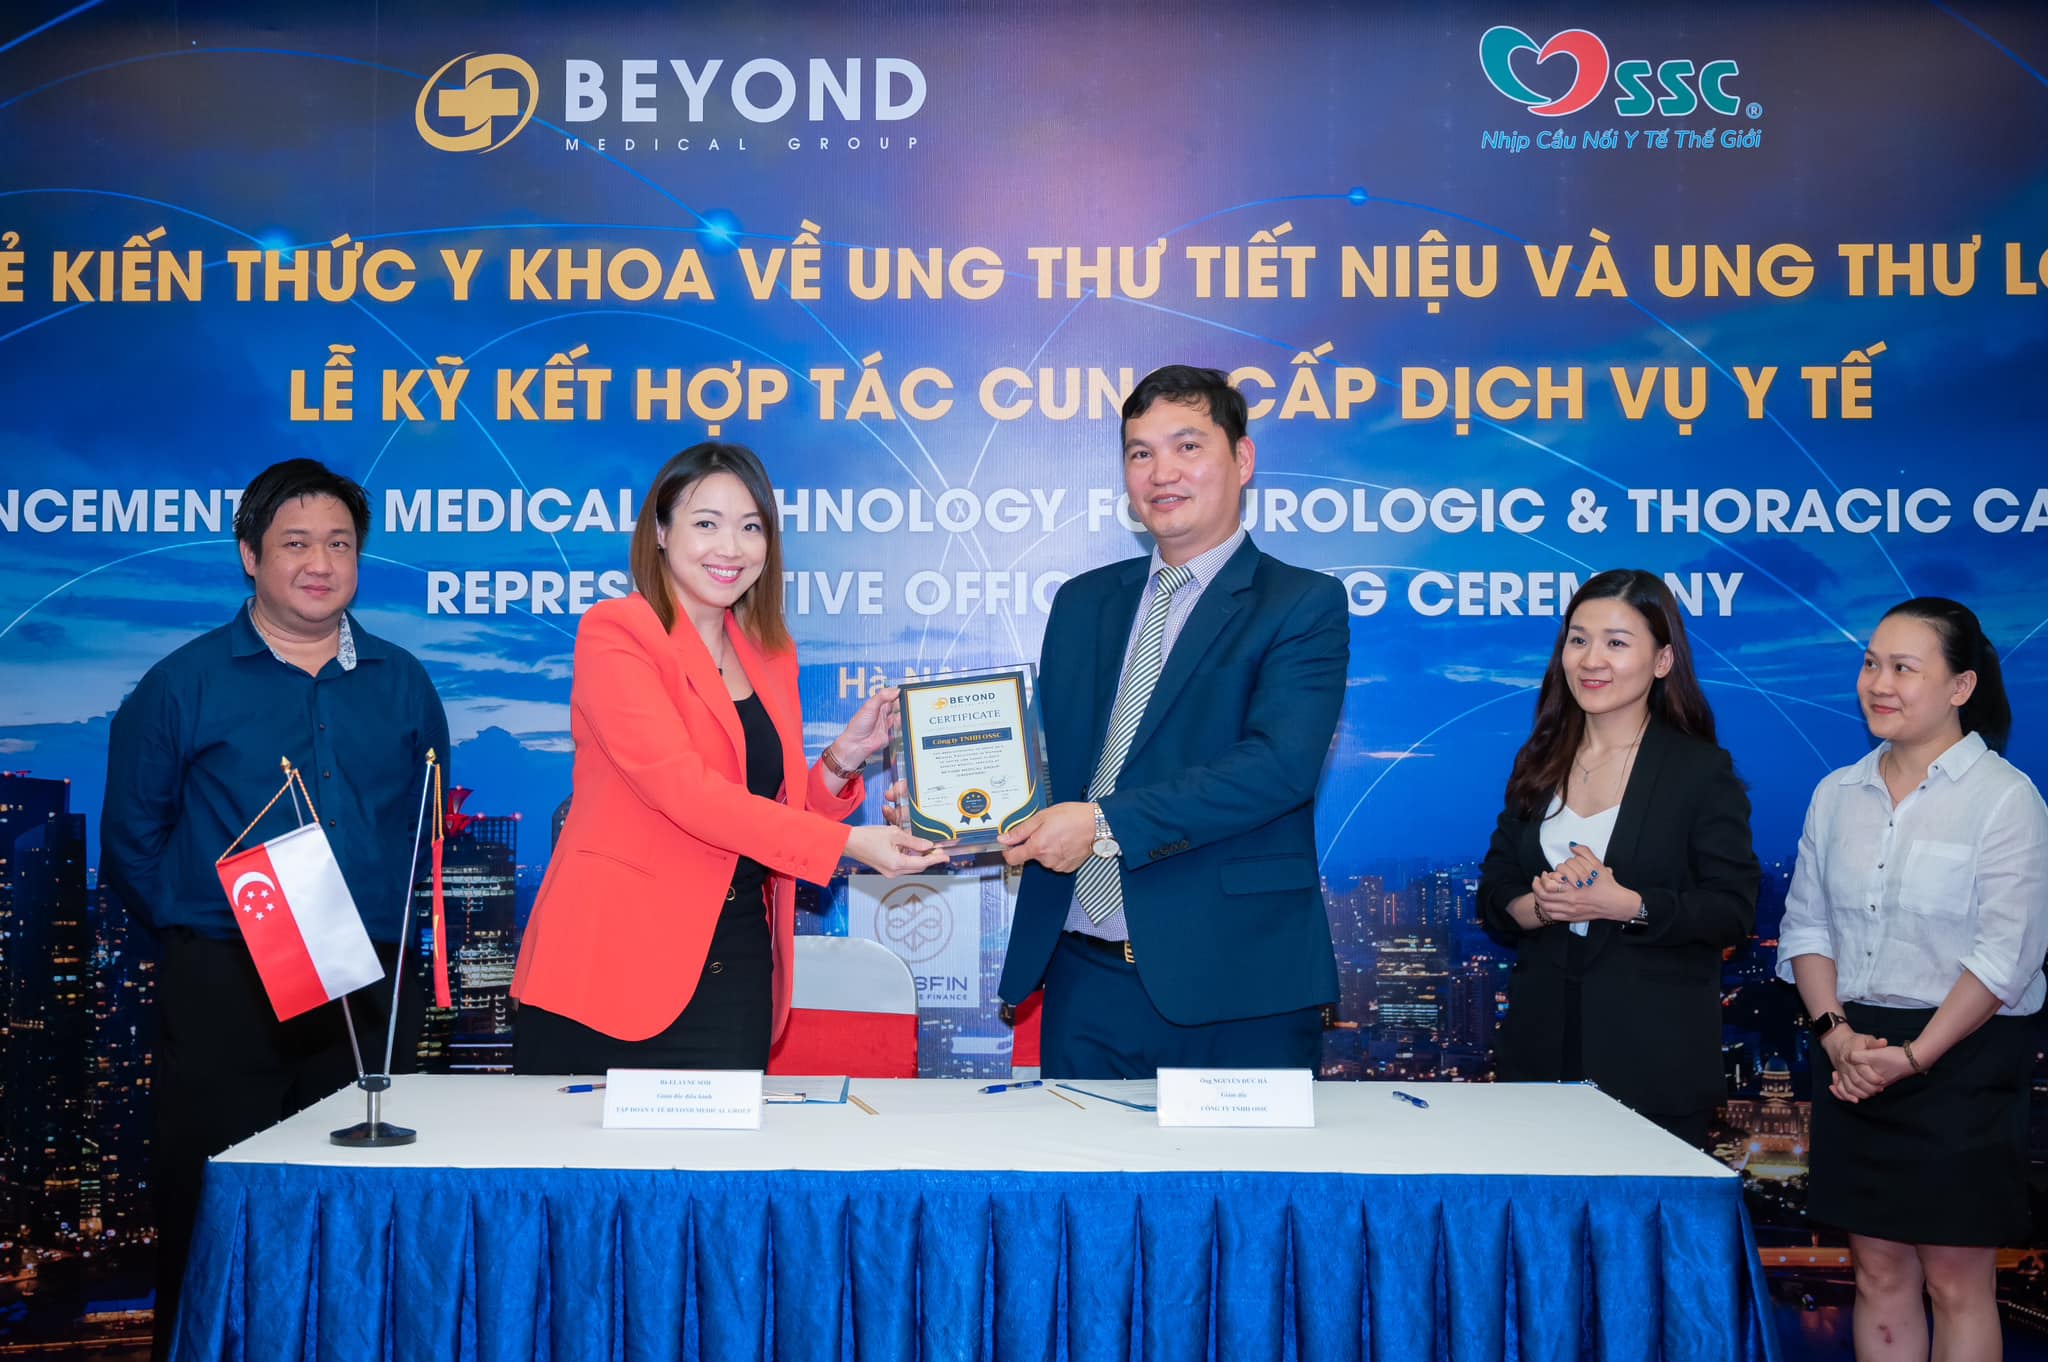 Tập đoàn Beyond Medical Group - Cung cấp dịch vụ y tế hàng đầu thế giới